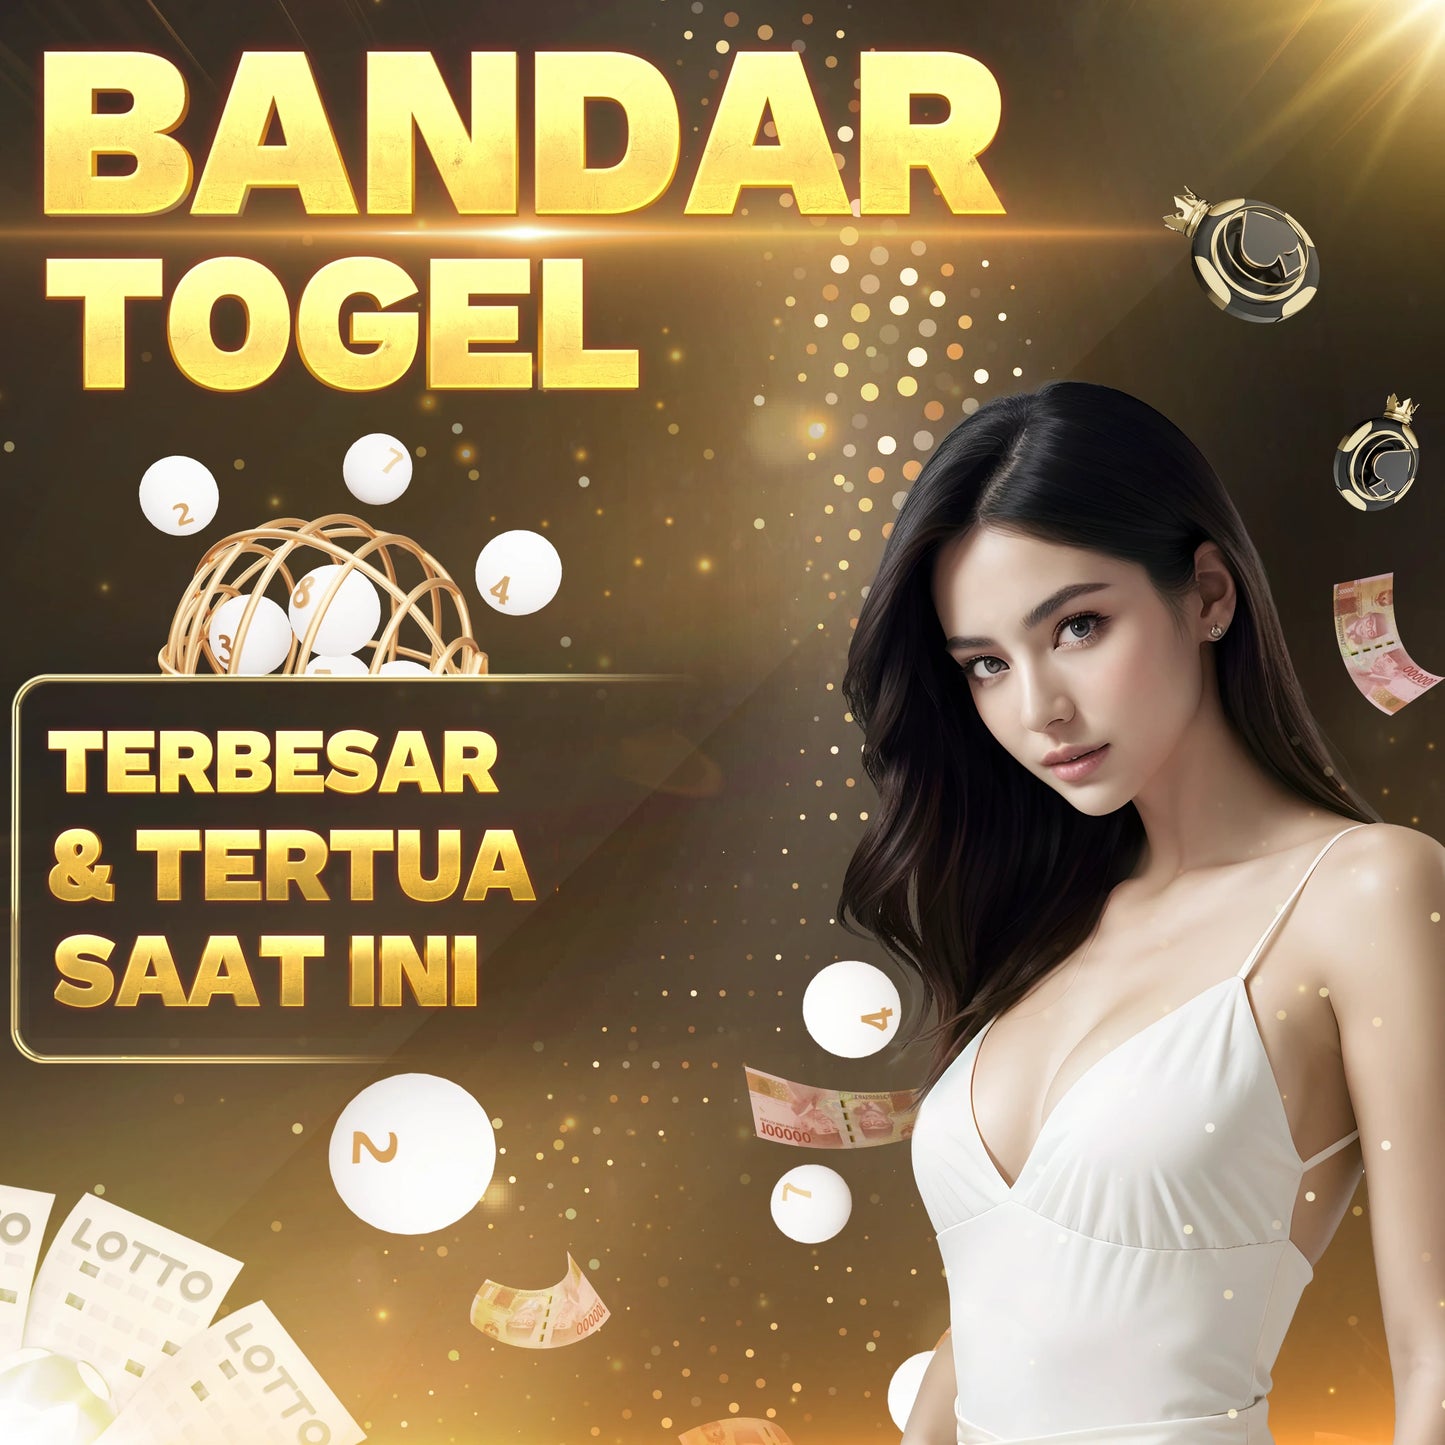 FIATOGEL - BANDAR TOGEL TERTUA & TERBESAR DI INDONESIA